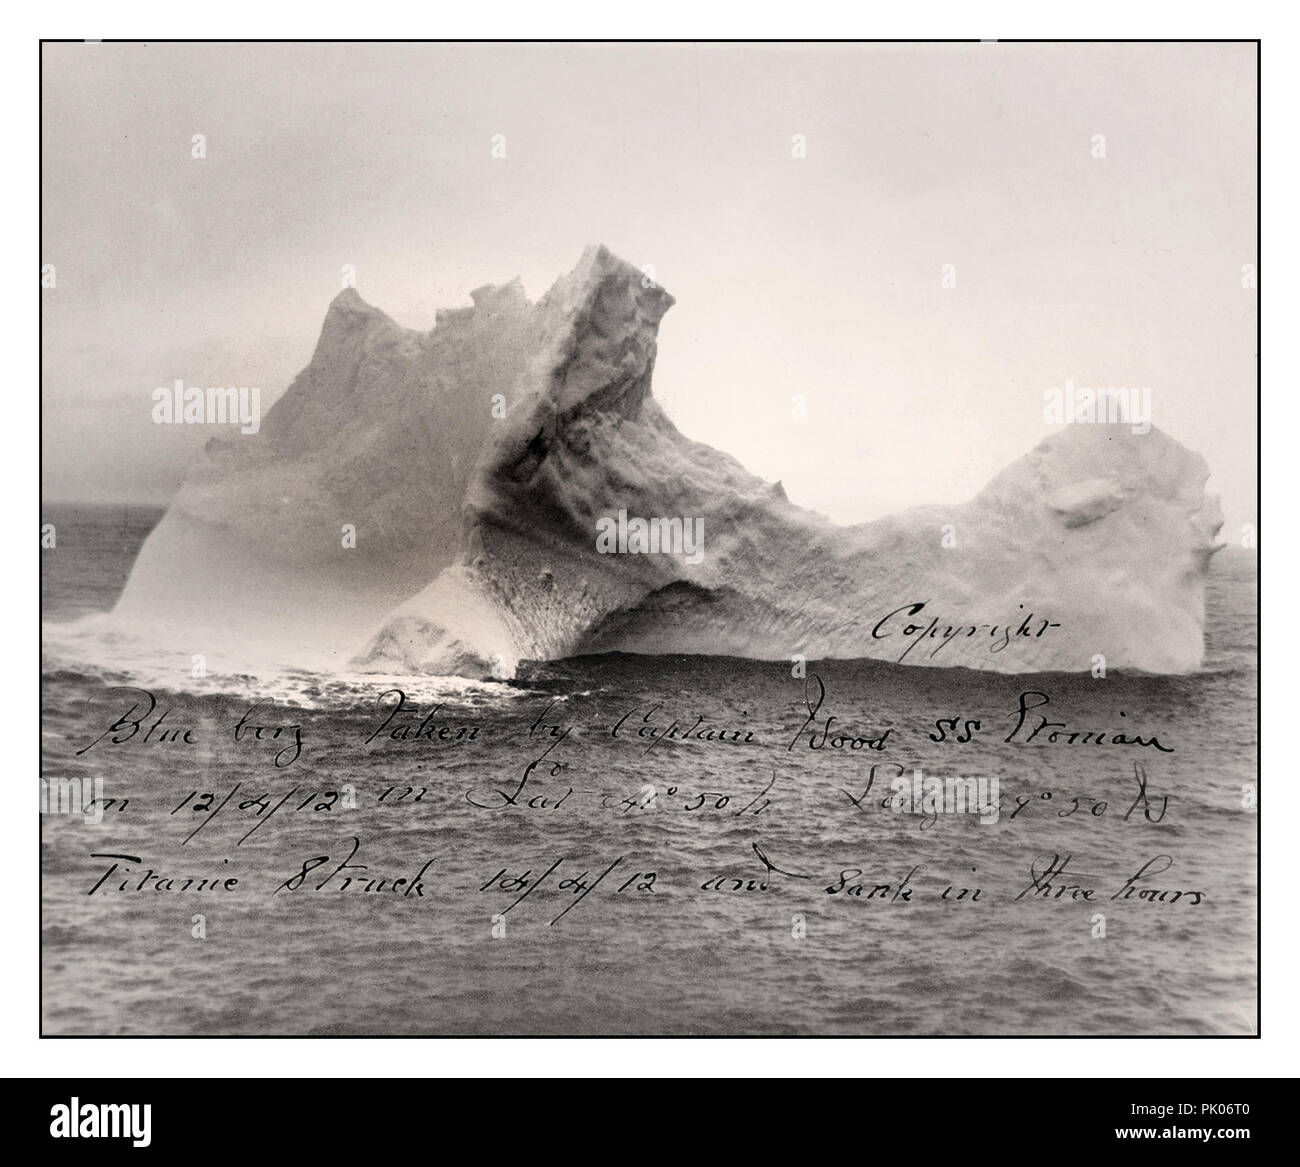 TITANIC RMS TITANIC EISBERG ist angeblich der Eisberg, der die Titanic versank. Das Foto, das Chief Steward am folgenden Tag, am 16. April 1912, an Bord der Prinz Adalbert, nach dem Untergang der Titanic in diesem Gebiet aufgenommen hatte, zeigte auf einer Seite des Eisbergs einen roten Farbabstrich, der von einem an der Seite kratzenden Schiff gemacht wurde. Das Foto ist beschriftet und signiert. Stockfoto